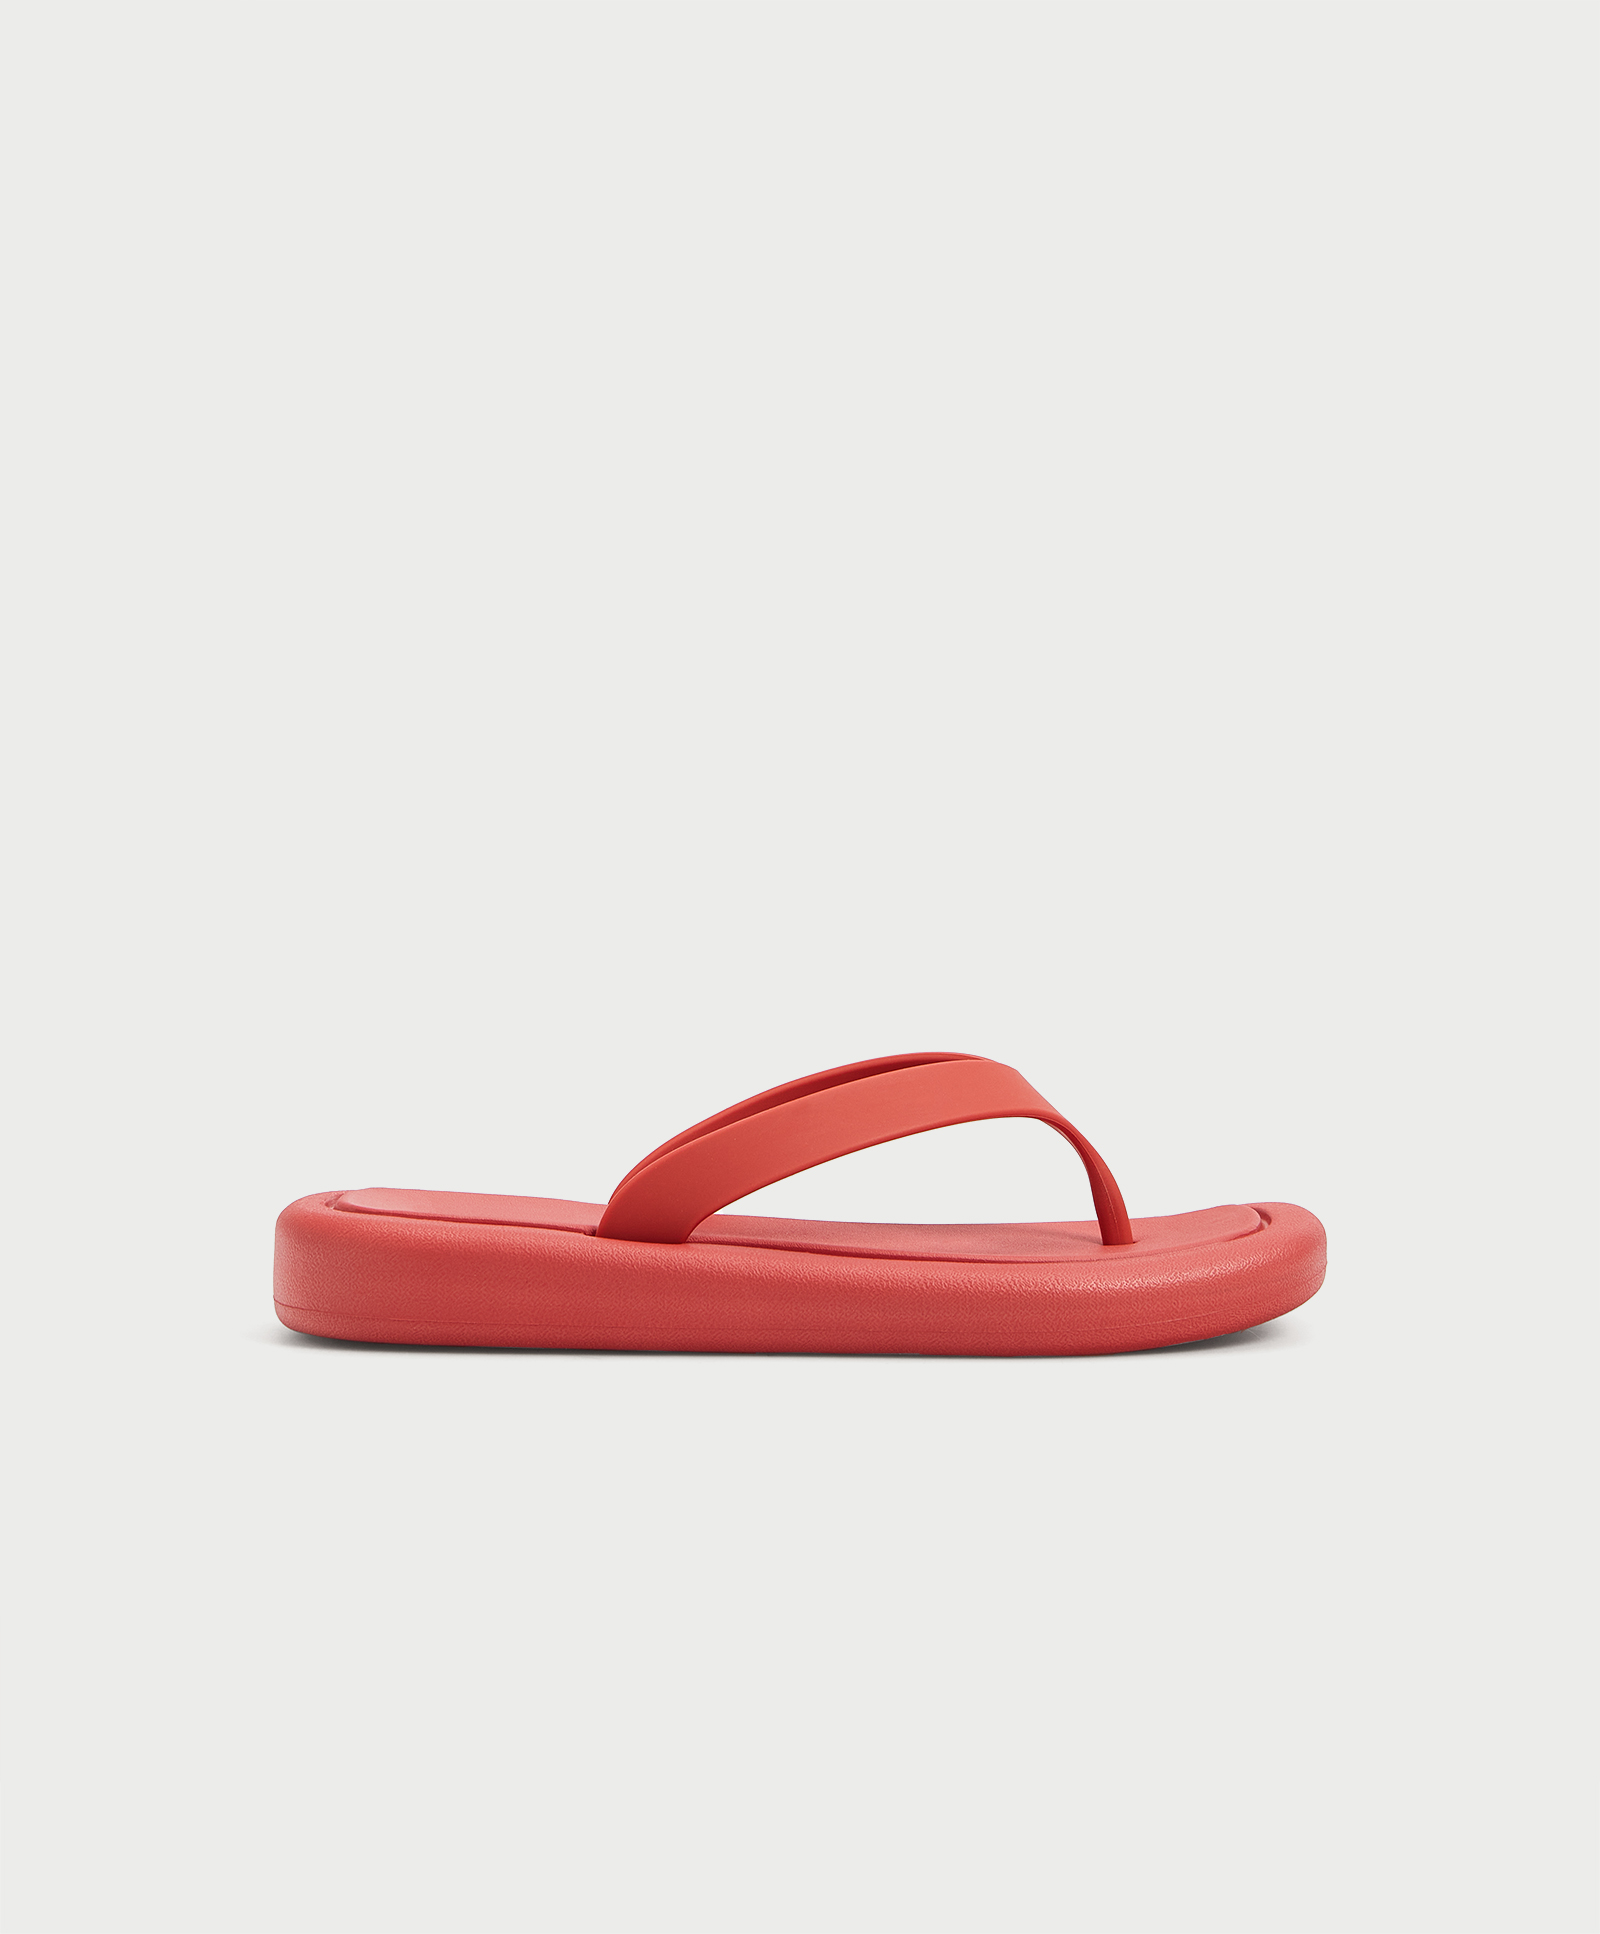 Maxi-sole beach sandals